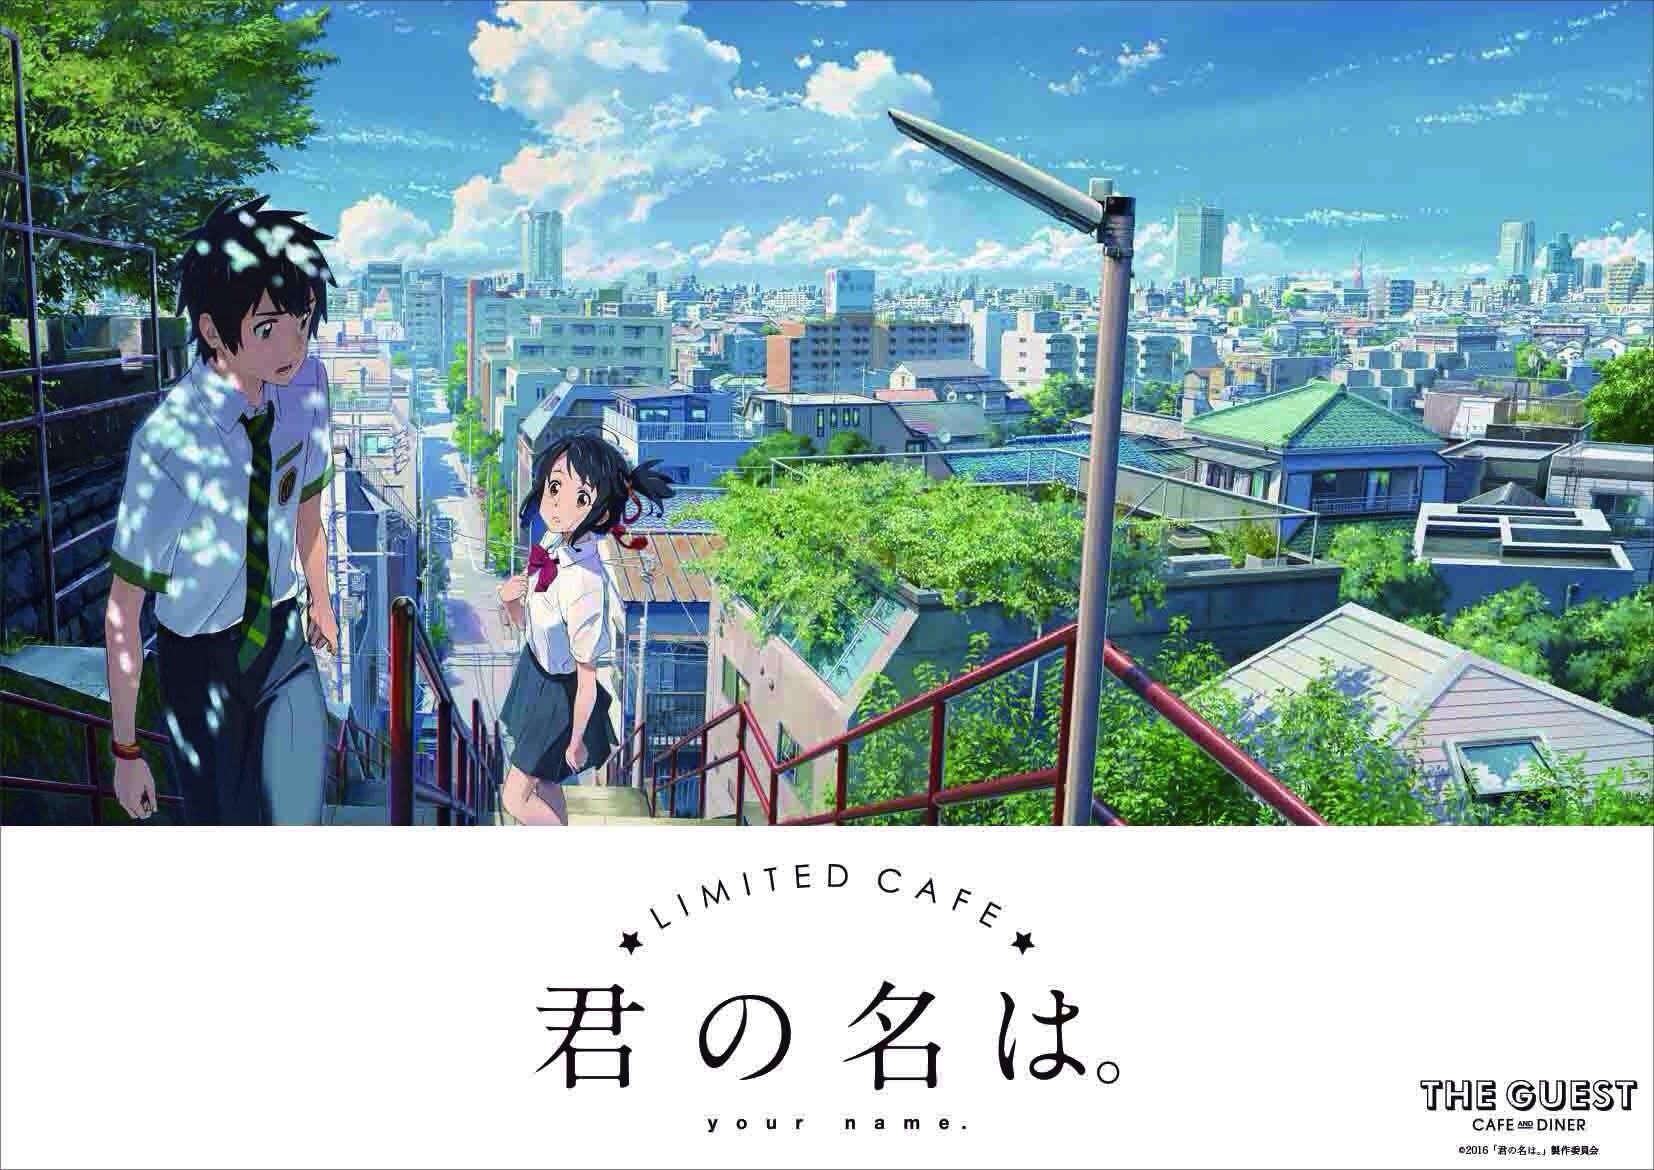 大ヒット映画『君の名は。』のカフェが、期間限定で名古屋パルコにOPEN！ - 6f45270a711fb7688863048b171bd3c7